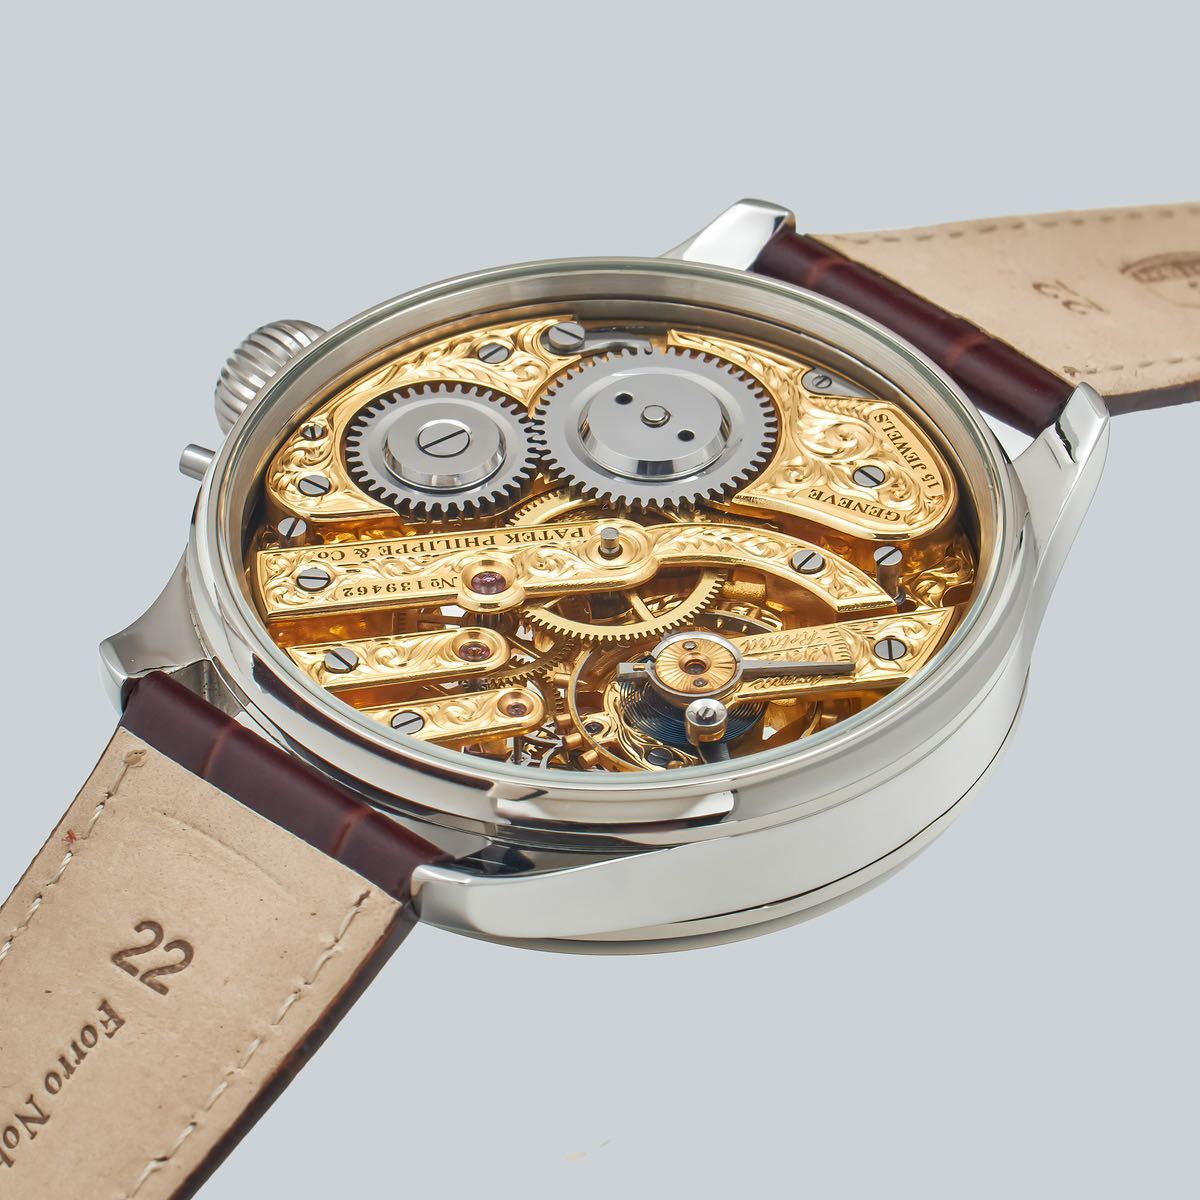 アンティーク Marriage watch Patek Philippe 懐中時計をアレンジした48mmのメンズ腕時計 半年保証 手巻き スケルトン